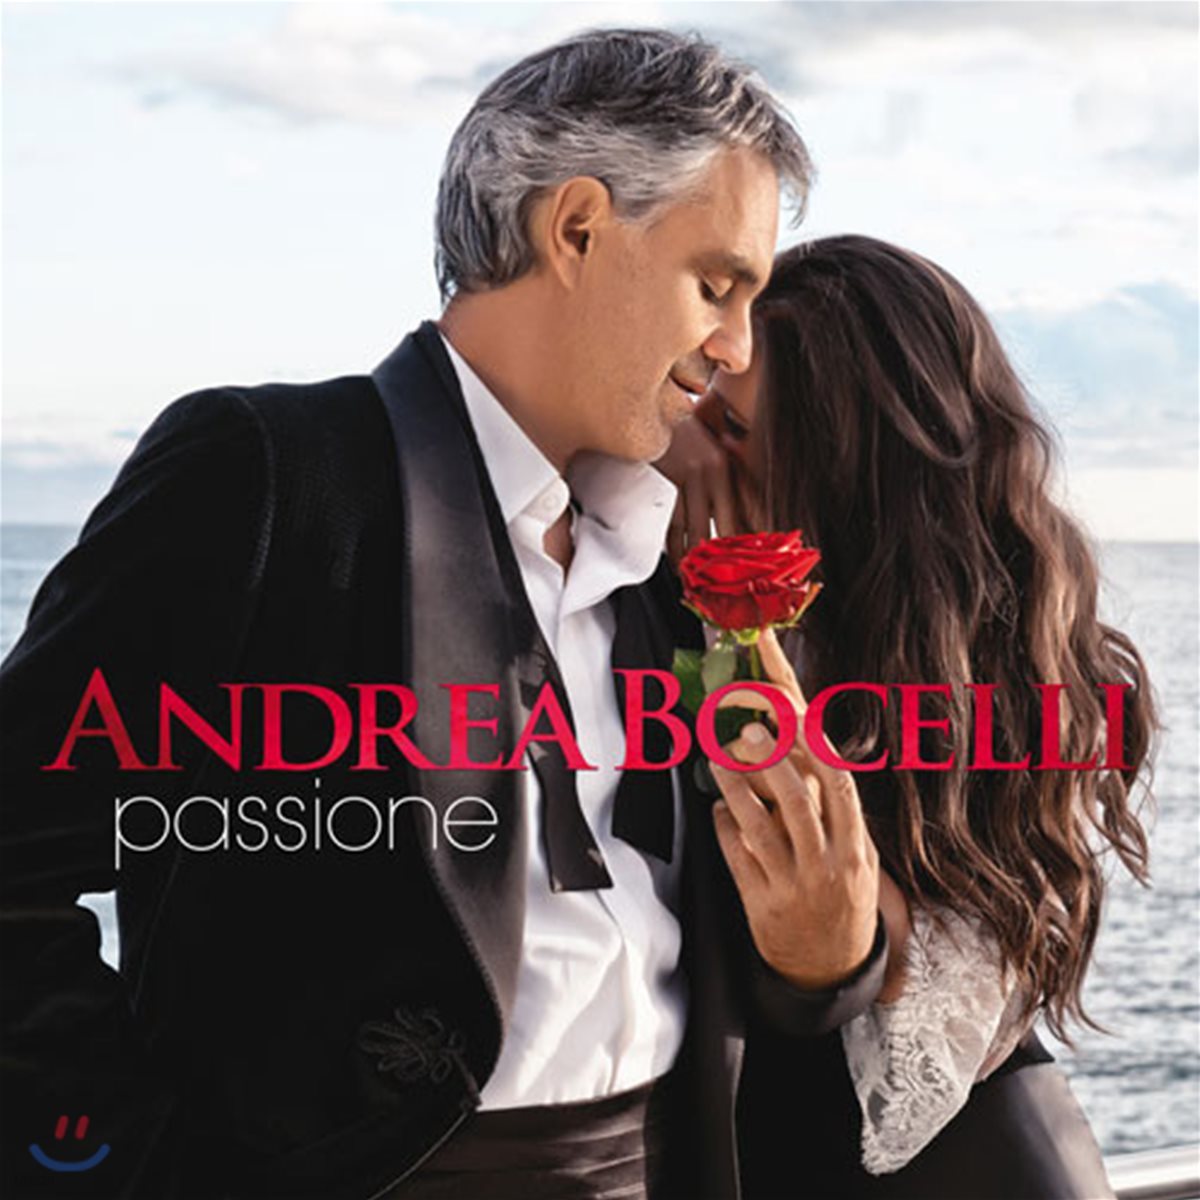 Andrea Bocelli - Passione 안드레아 보첼리 - 열정 [2LP]